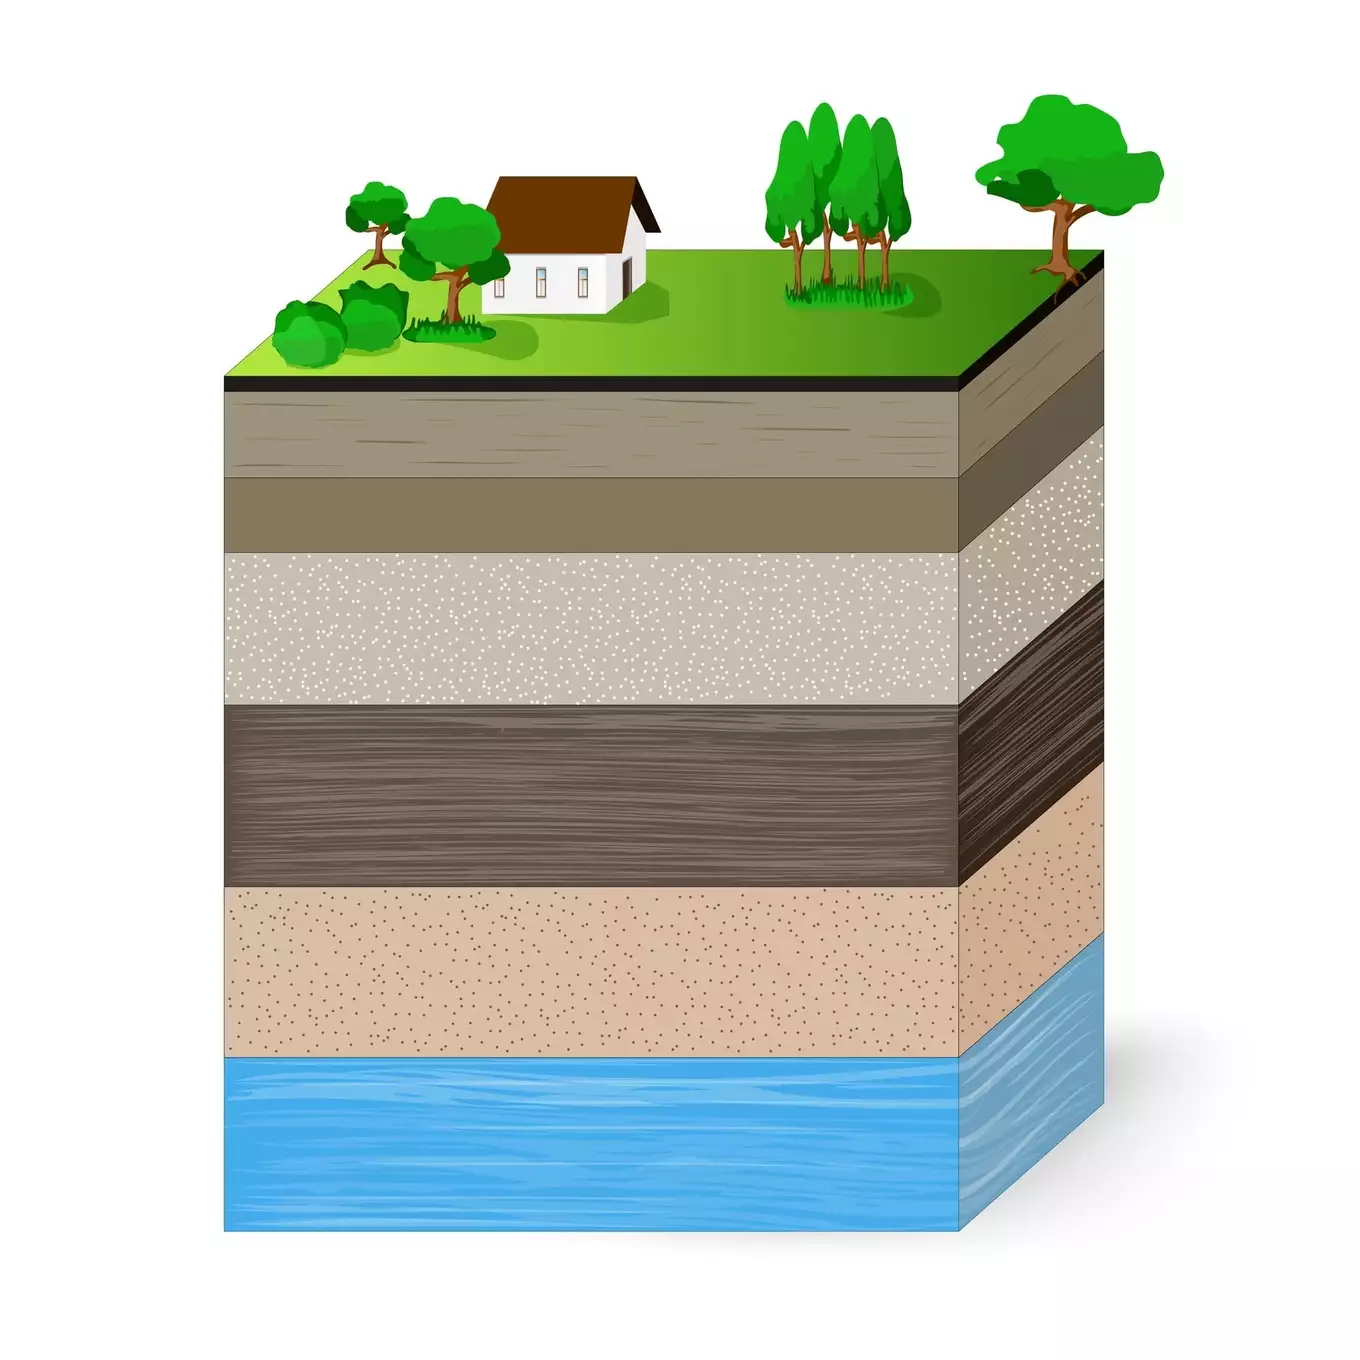 土壌断面の層